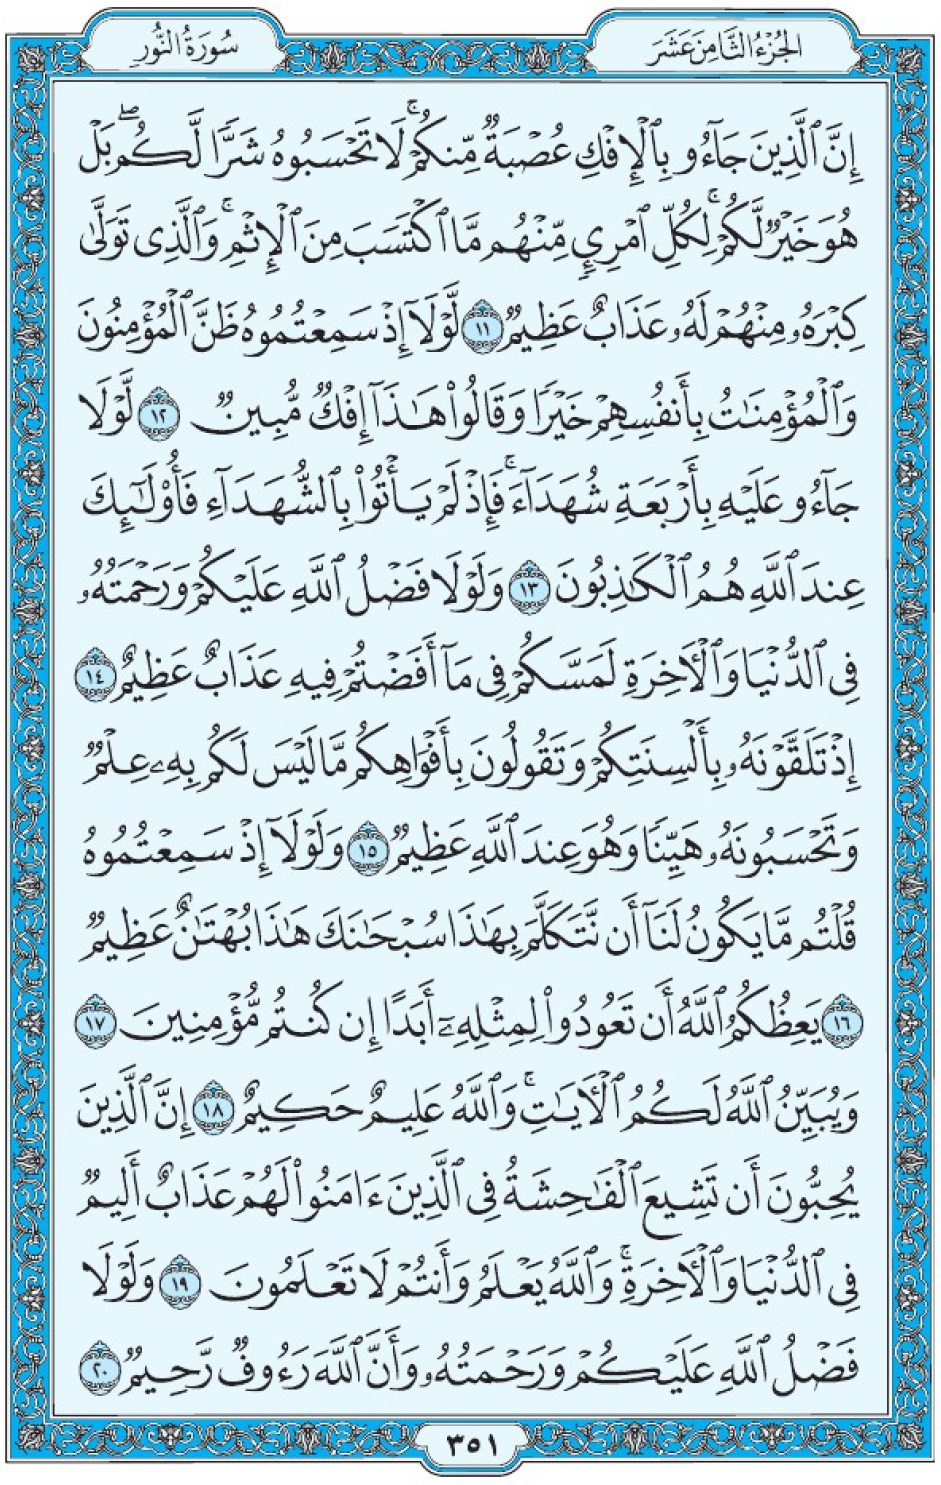 Коран Мединский мусхаф страница 351, Ан-Нур, аят 11-20